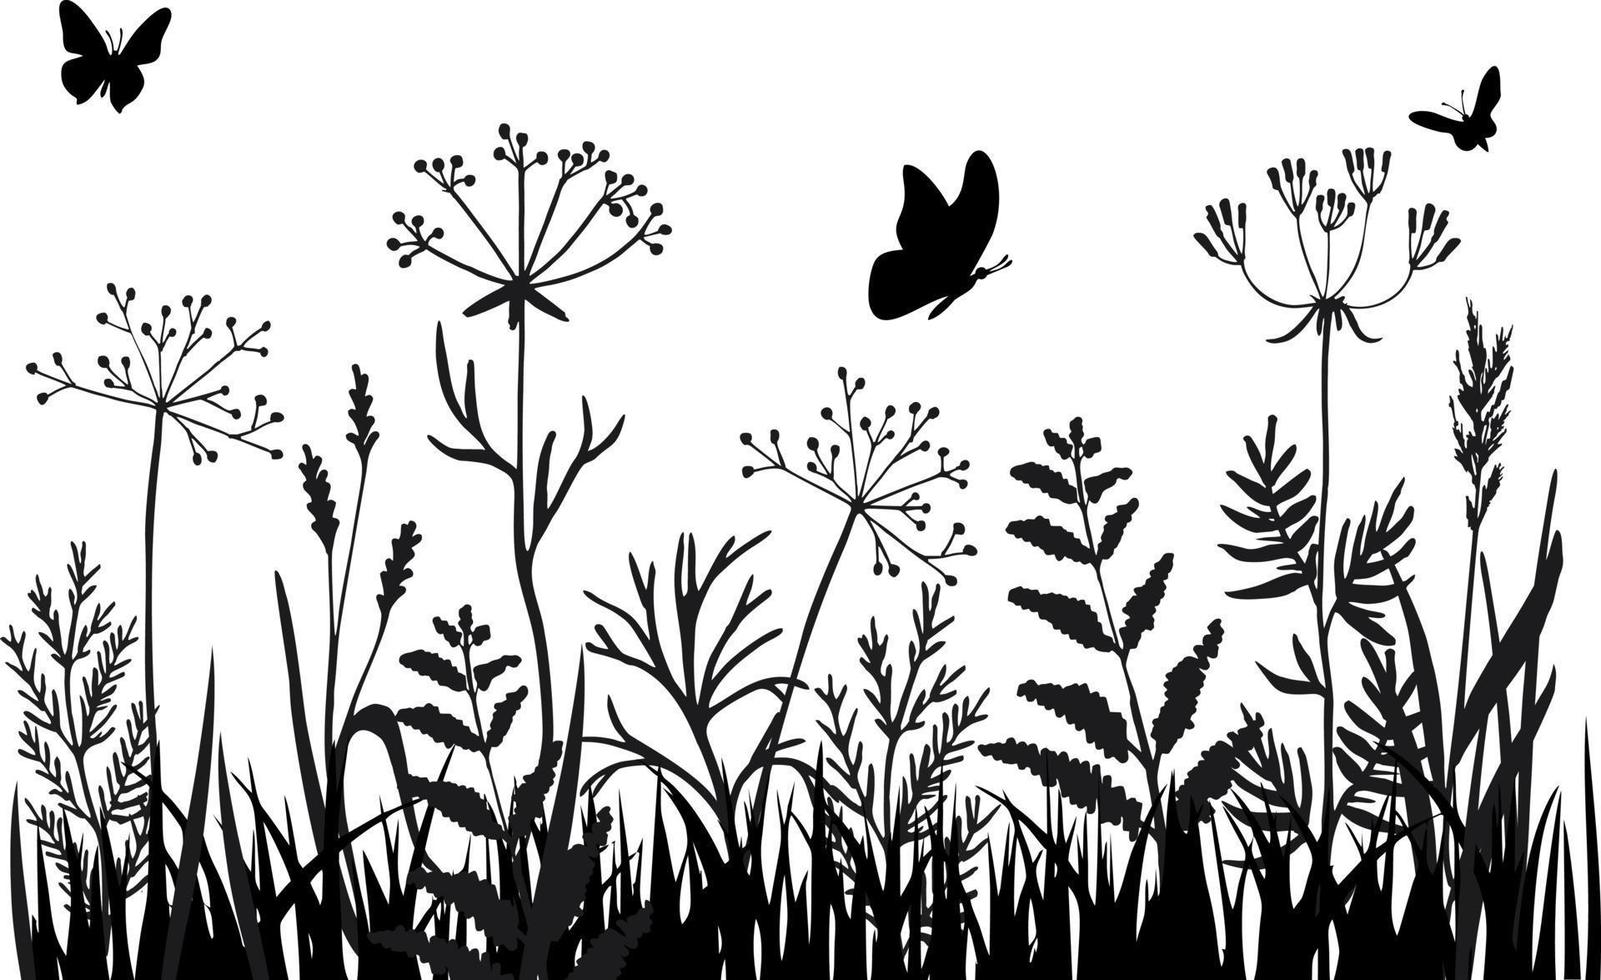 Grasgrenzen. schwarze Silhouette aus Gras, Stacheln und Kräutern. abstrakte Wiesenlinie mit Gras und Blumen. hand gezeichnete skizzenart-vektorillustration. vektor